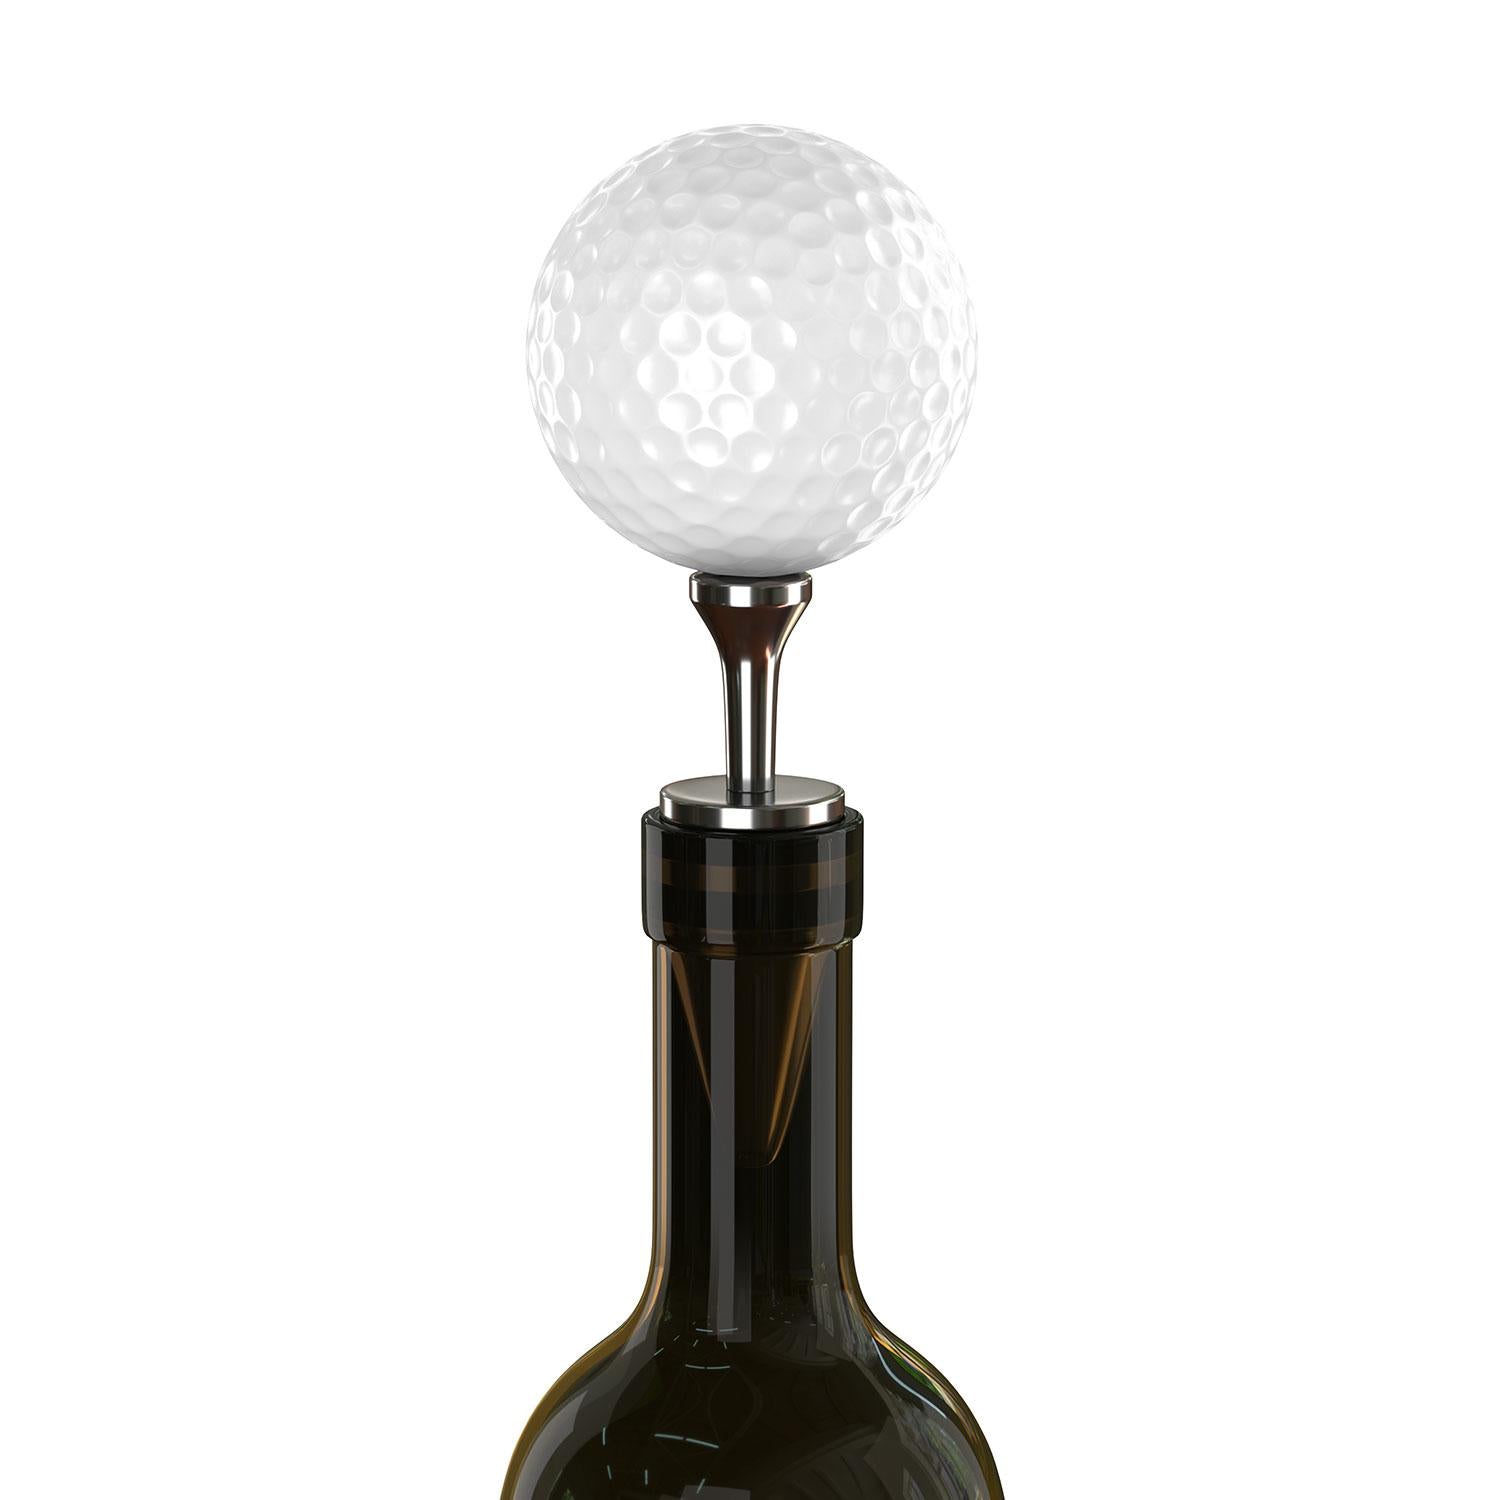 Uberstar Golf Ball Wine Stopper